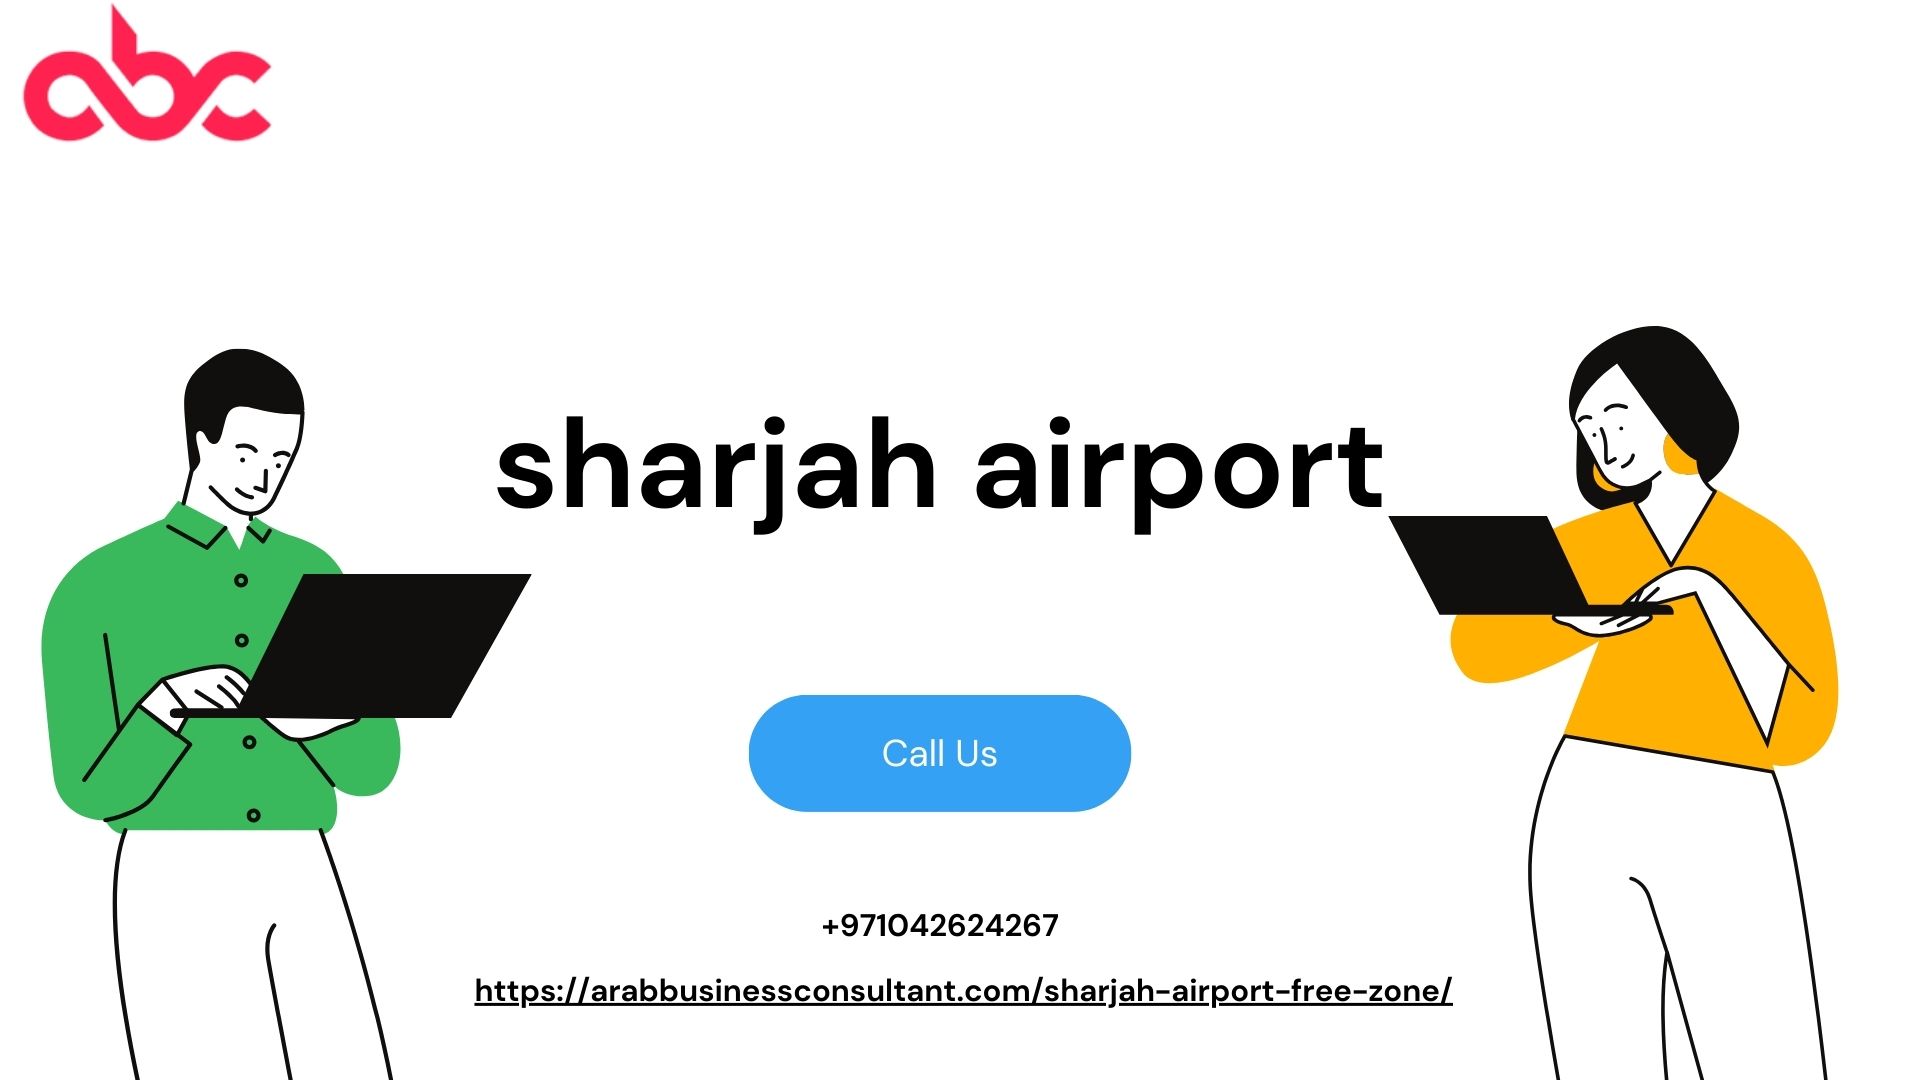 sharjah airport